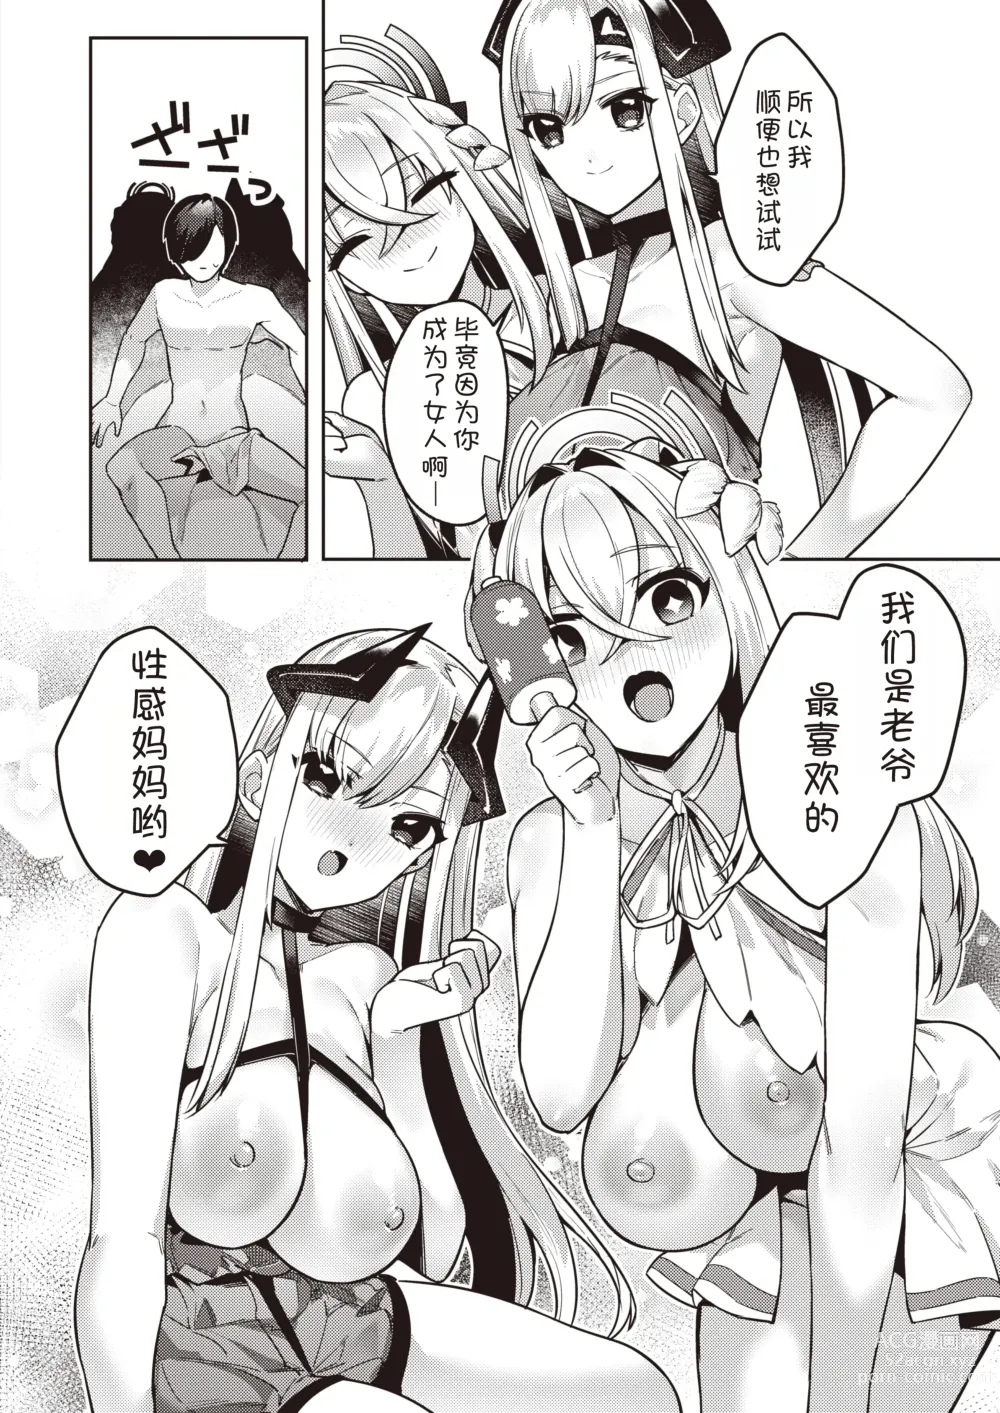 Page 5 of manga Chotto Yabai Megami to Maou to Amayakababubabu Suru no wa Dame desu ka?